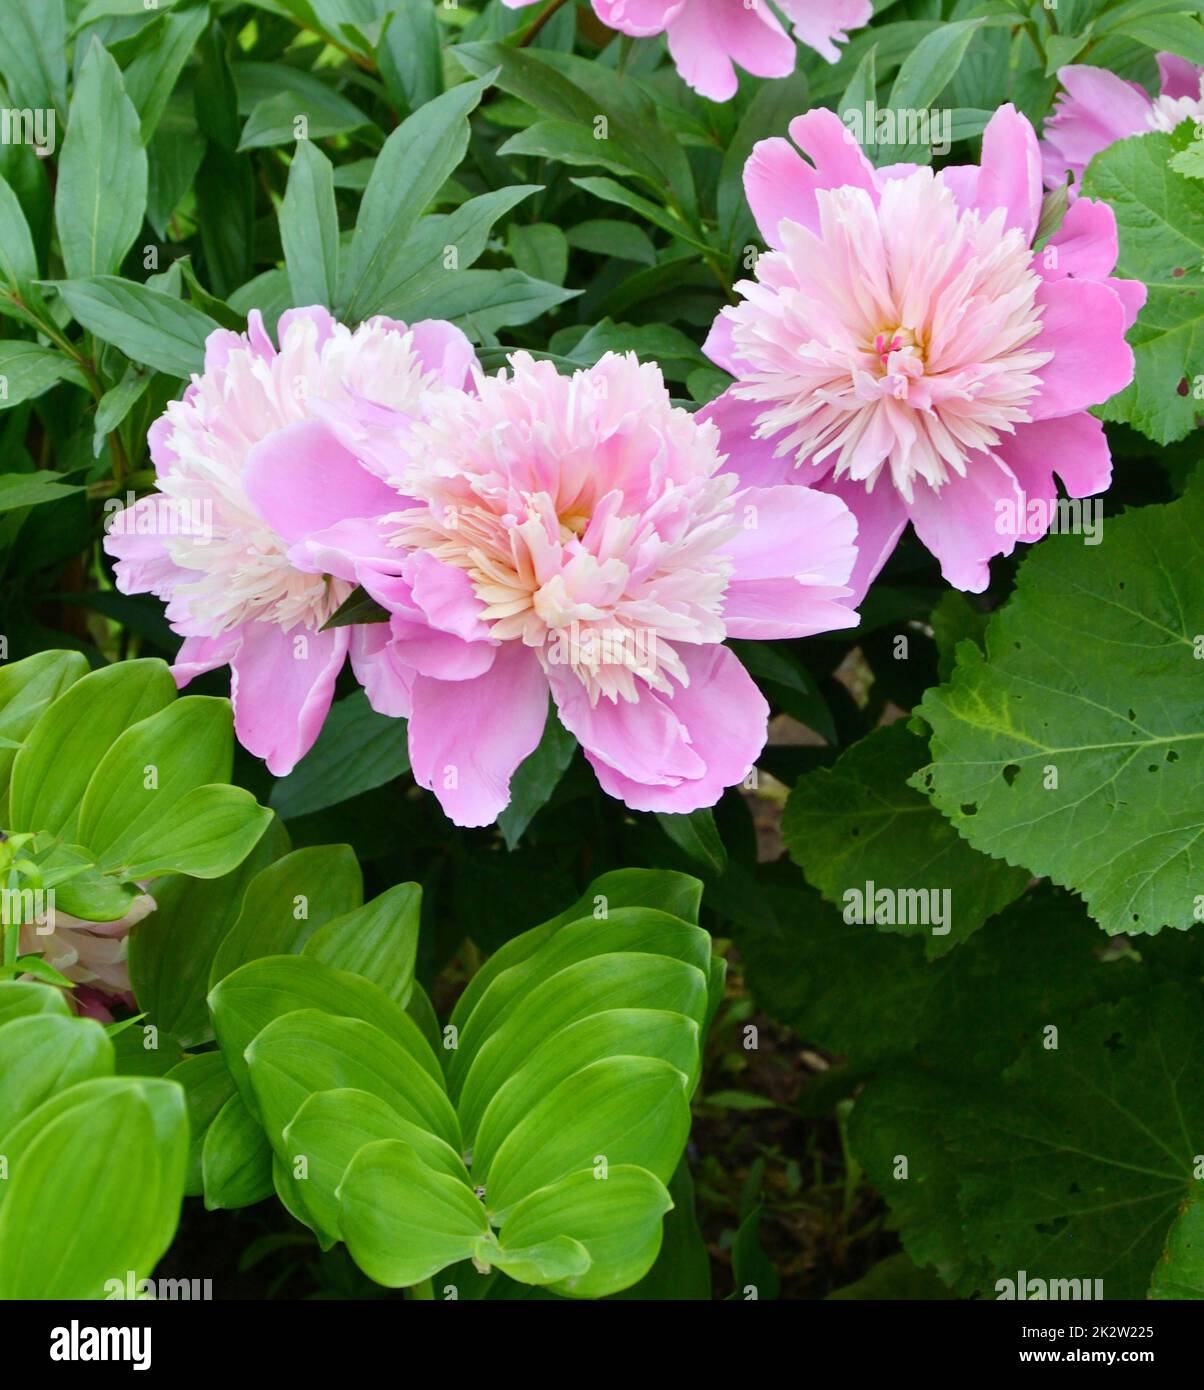 Fleur de pivoine (lat. Paeonia) de couleur blanc-rose Banque D'Images